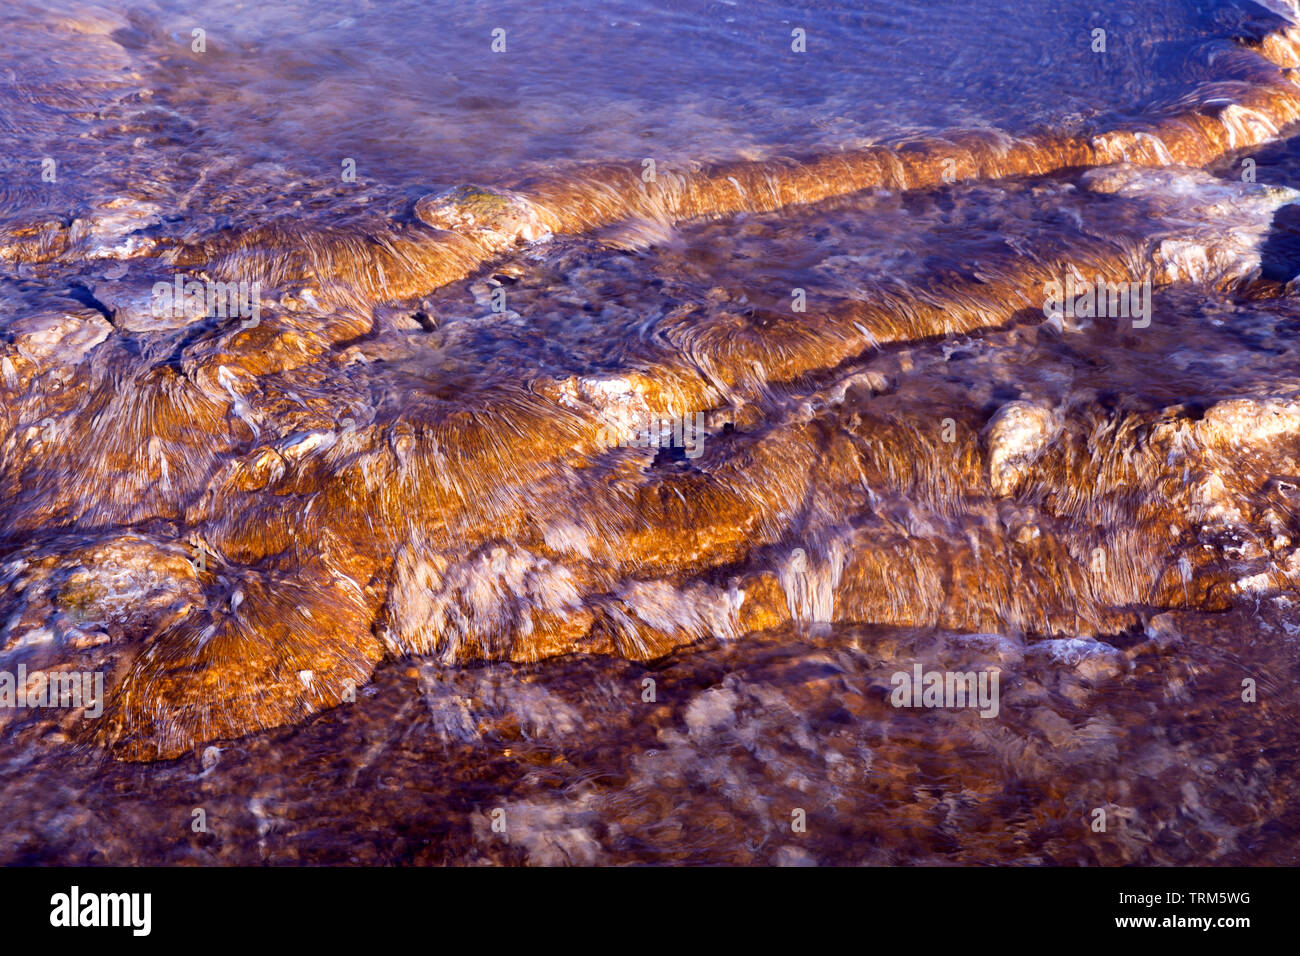 Flussi di acqua sopra il calore fiorente vita microbica su molla Canarie a Mammoth Hot Springs nel Parco Nazionale di Yellowstone. Foto Stock